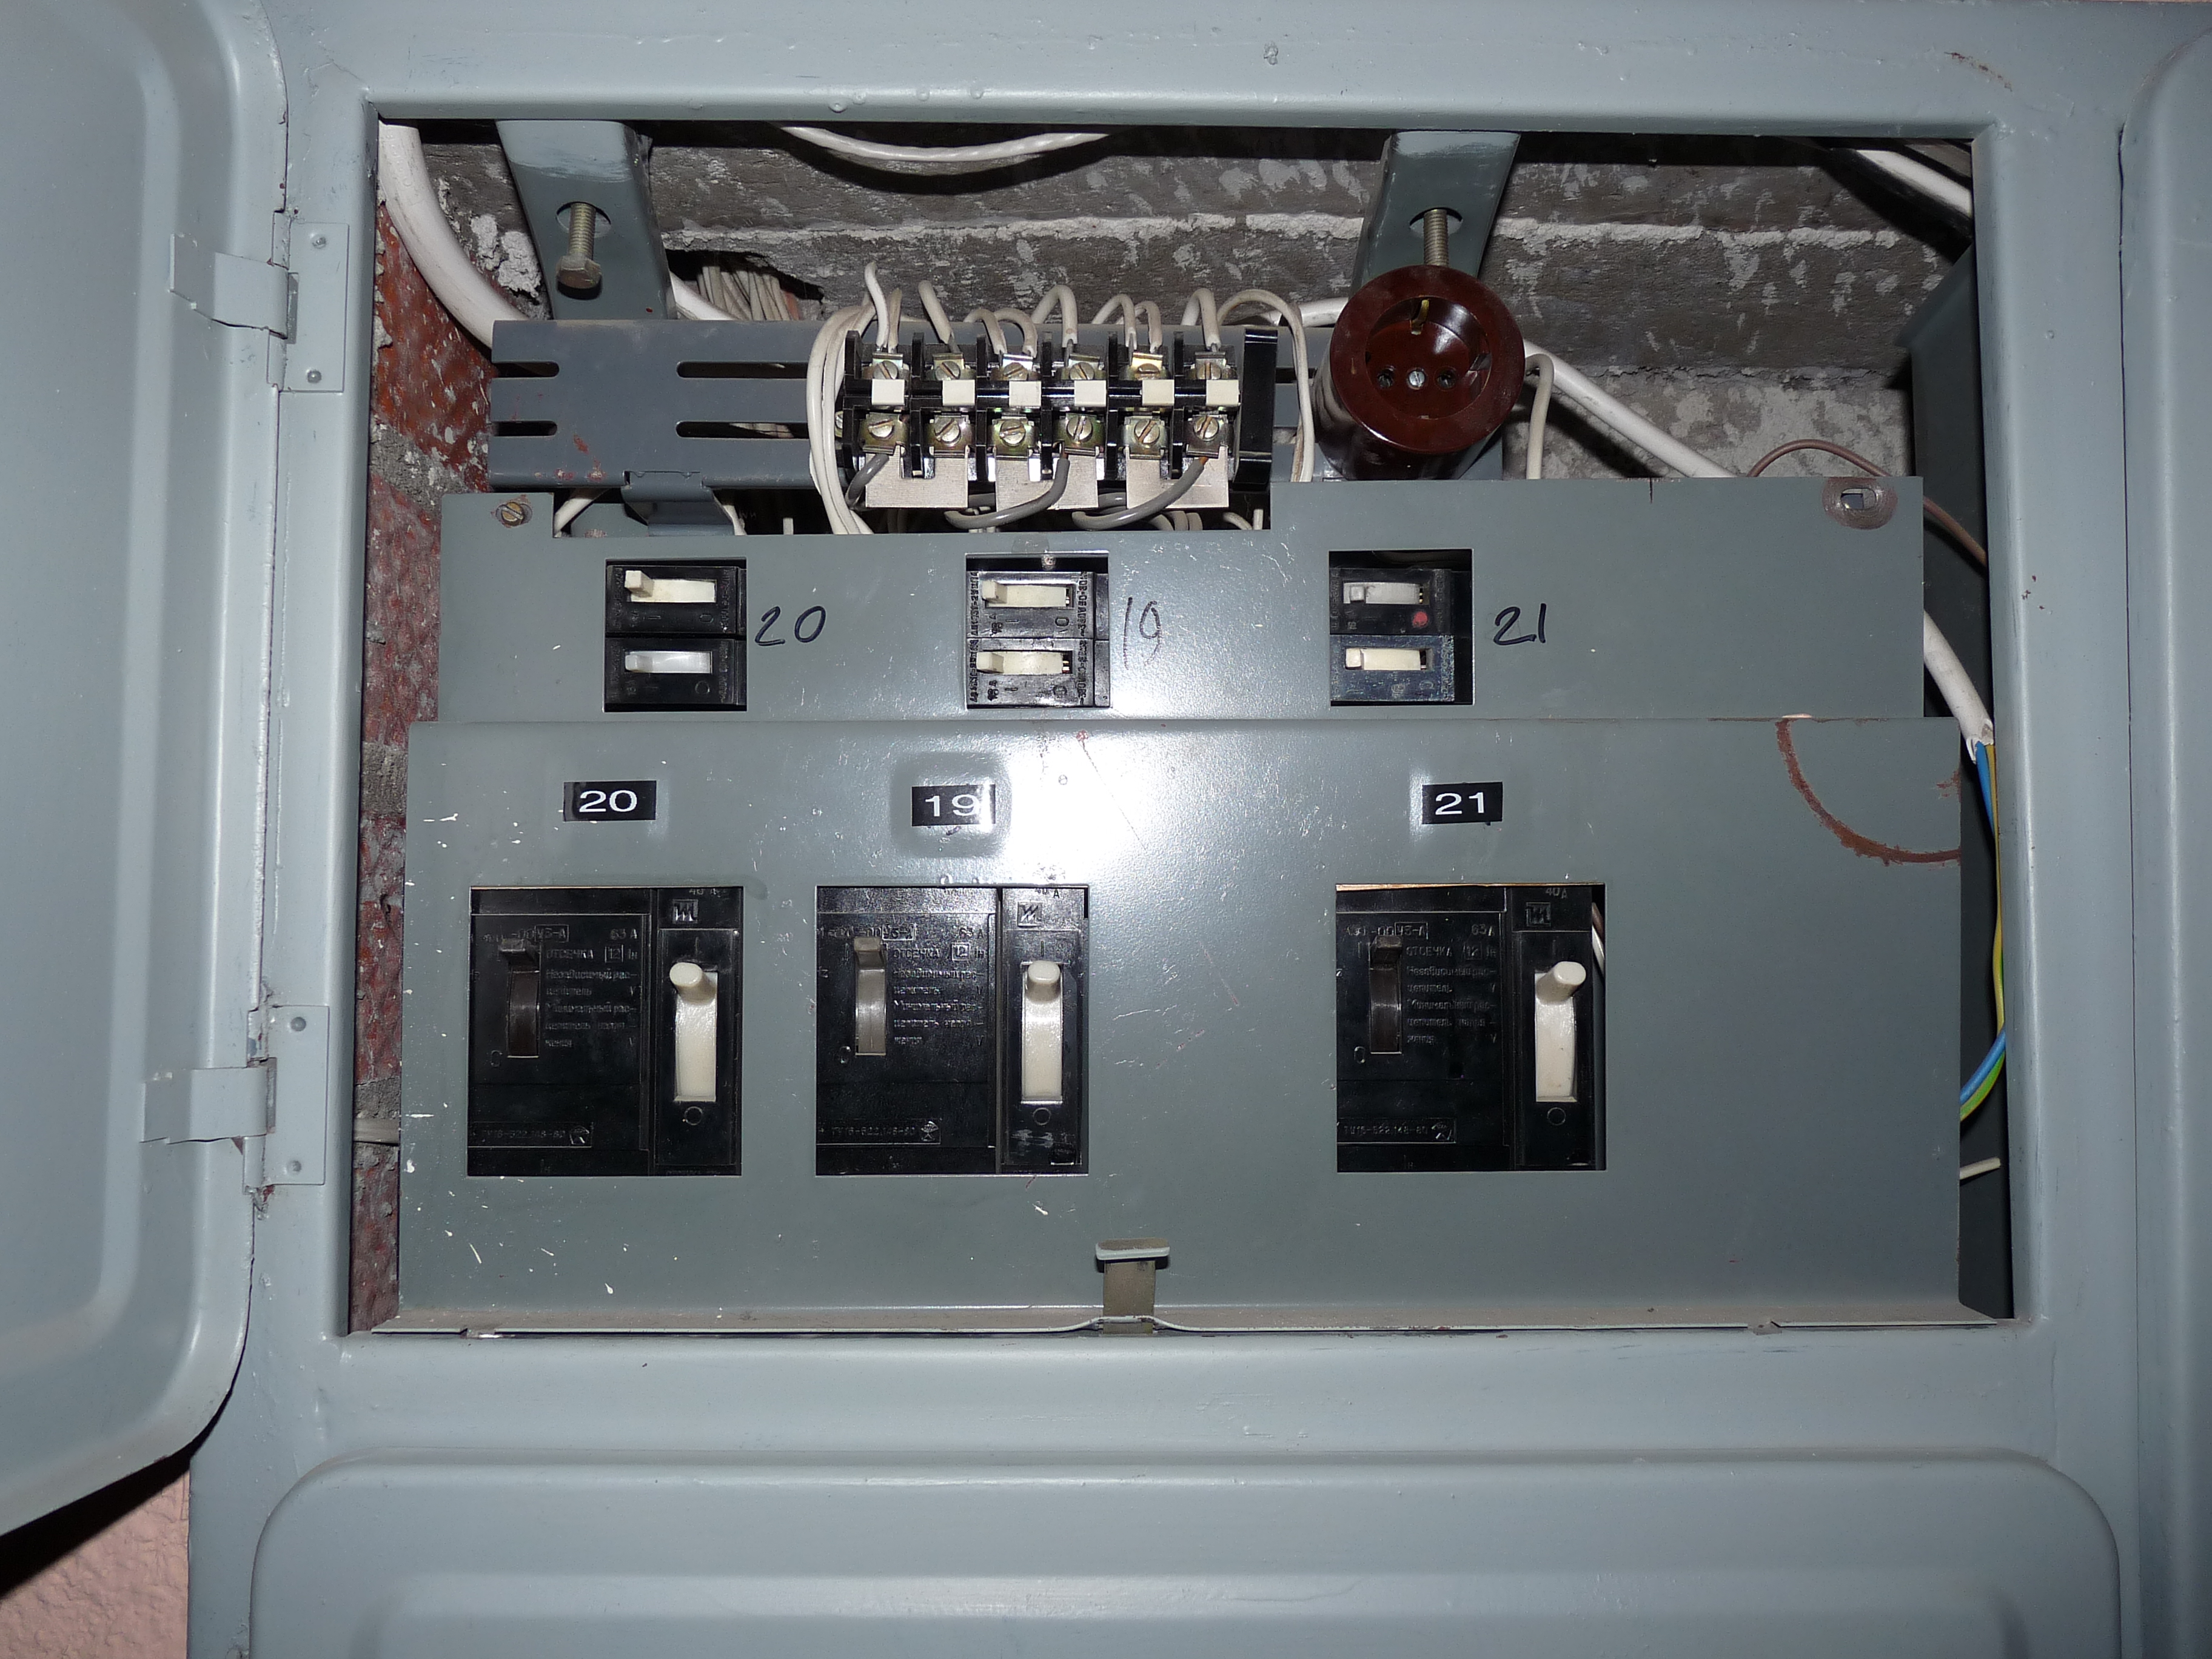 File:Liikuri 16 - old circuit breakers in fuse box.JPG - Wikimedia ...